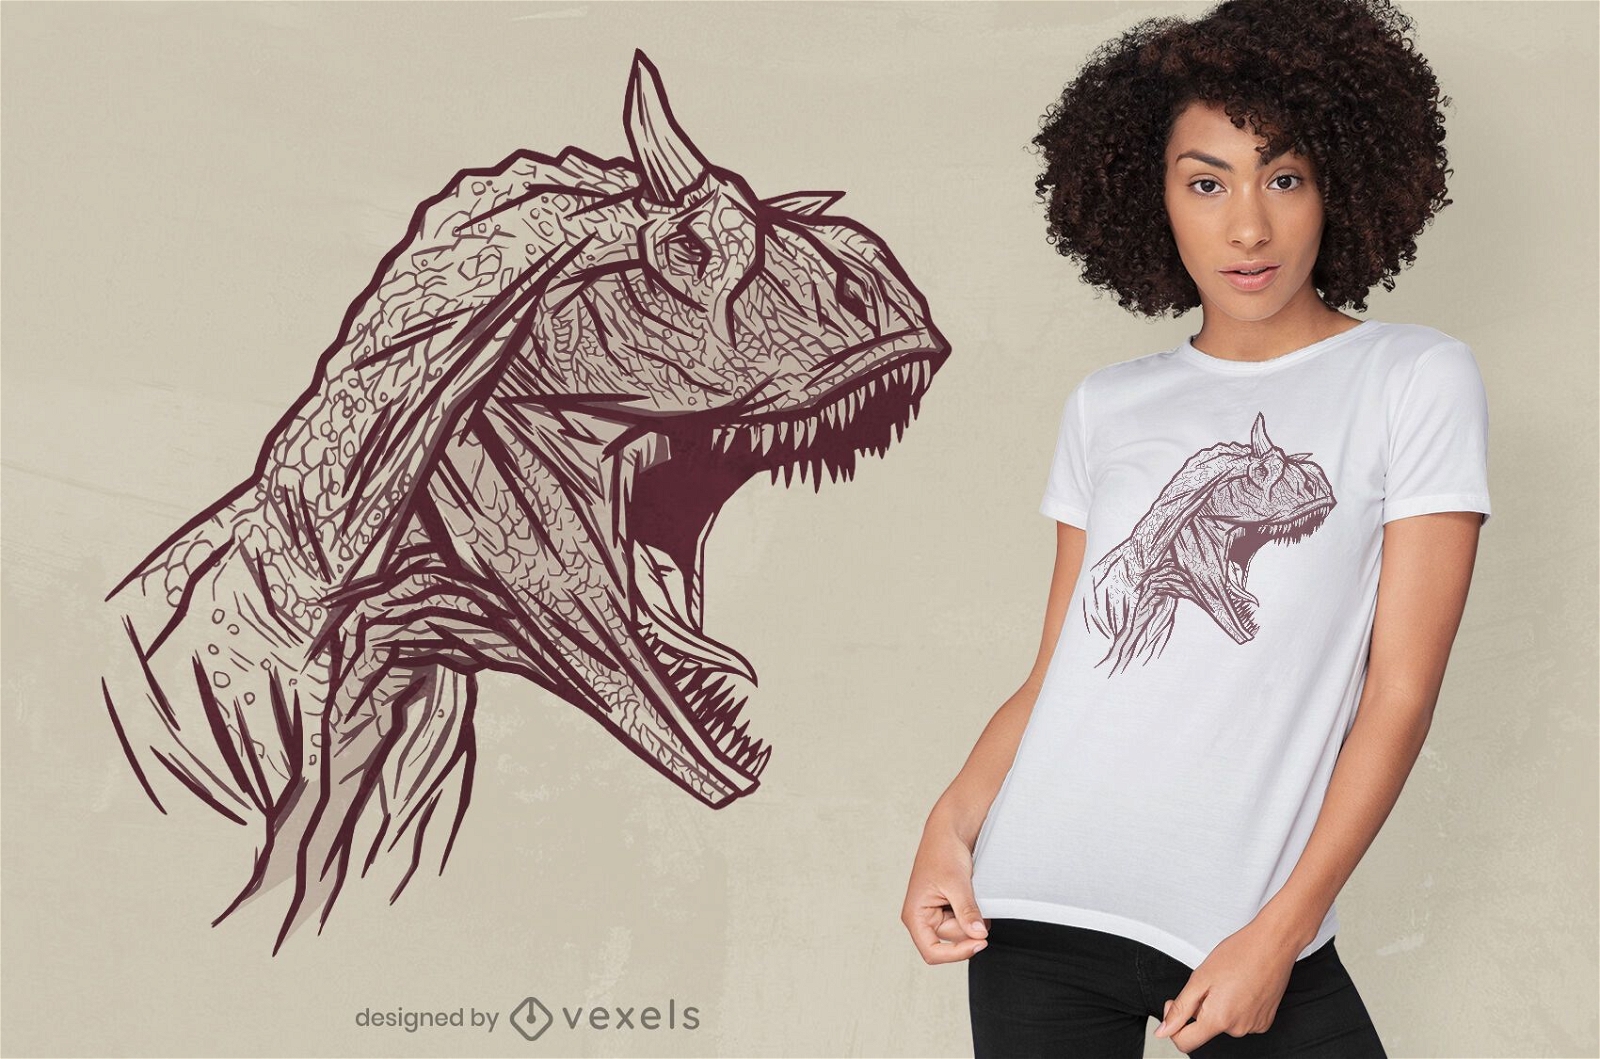 Descarga Vector De Diseño De Camiseta Con Cara De Dinosaurio Carnotaurus.